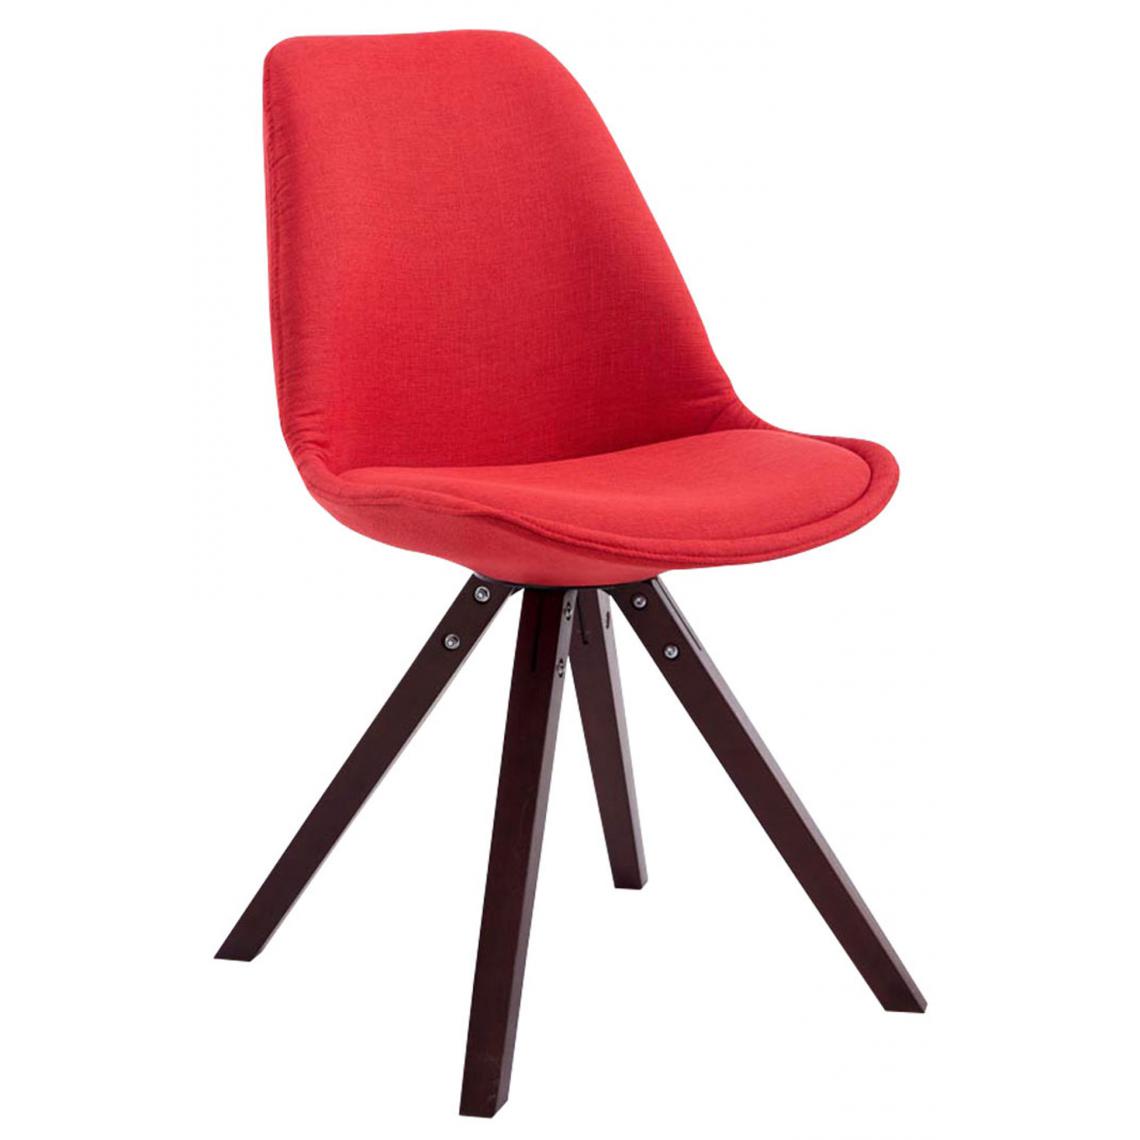 Icaverne - Admirable Chaise visiteur famille Katmandou tissu carré cappuccino (chêne) couleur rouge - Chaises